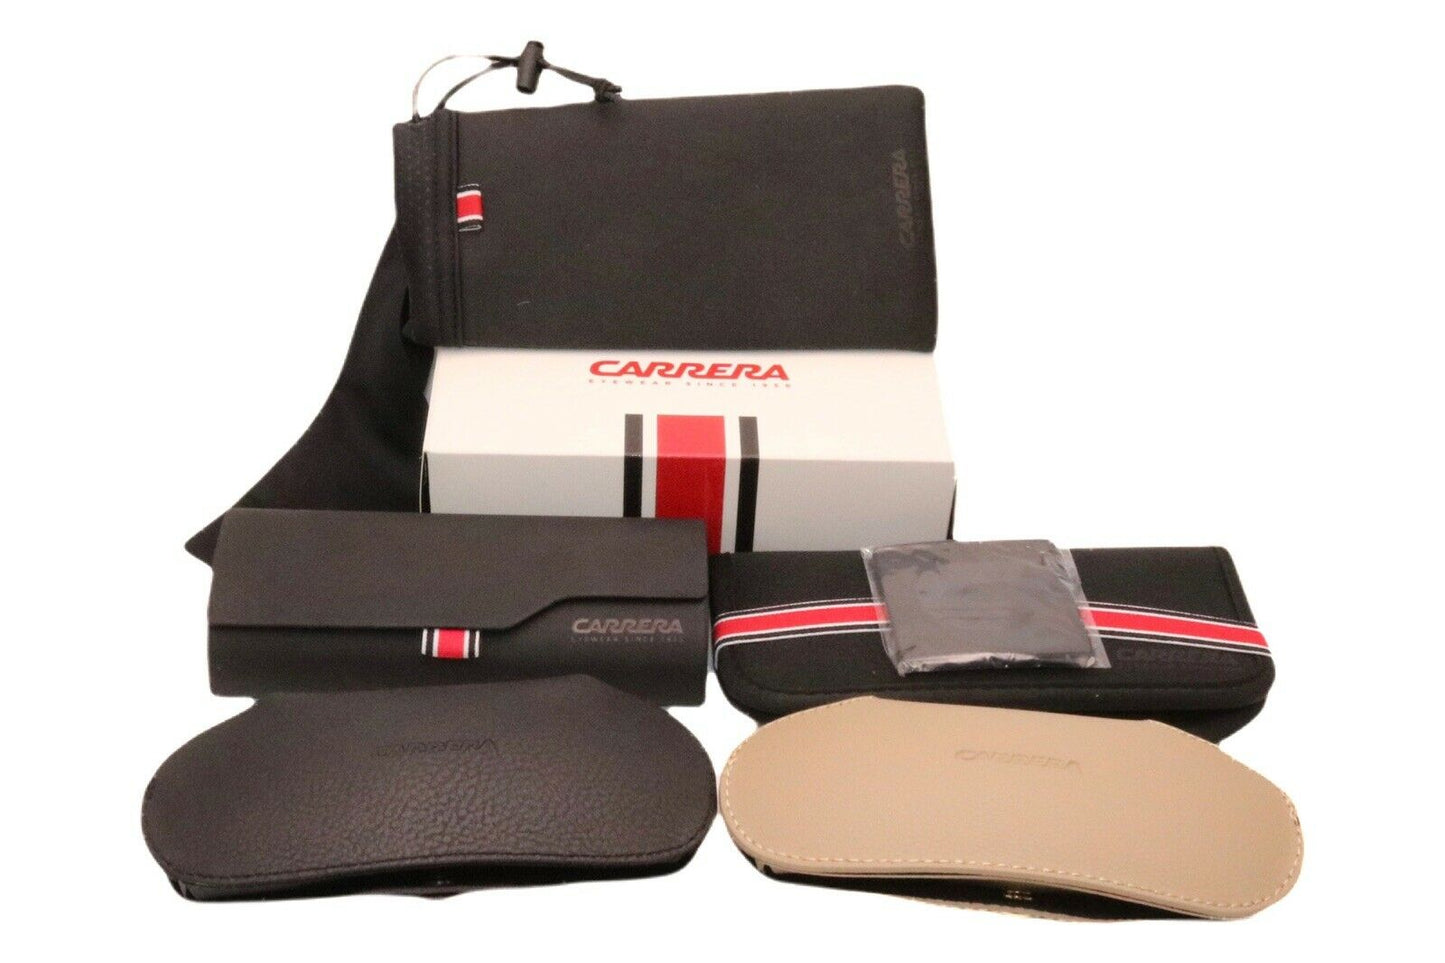 Carrera CA6662-ORC-53 53mm New Eyeglasses